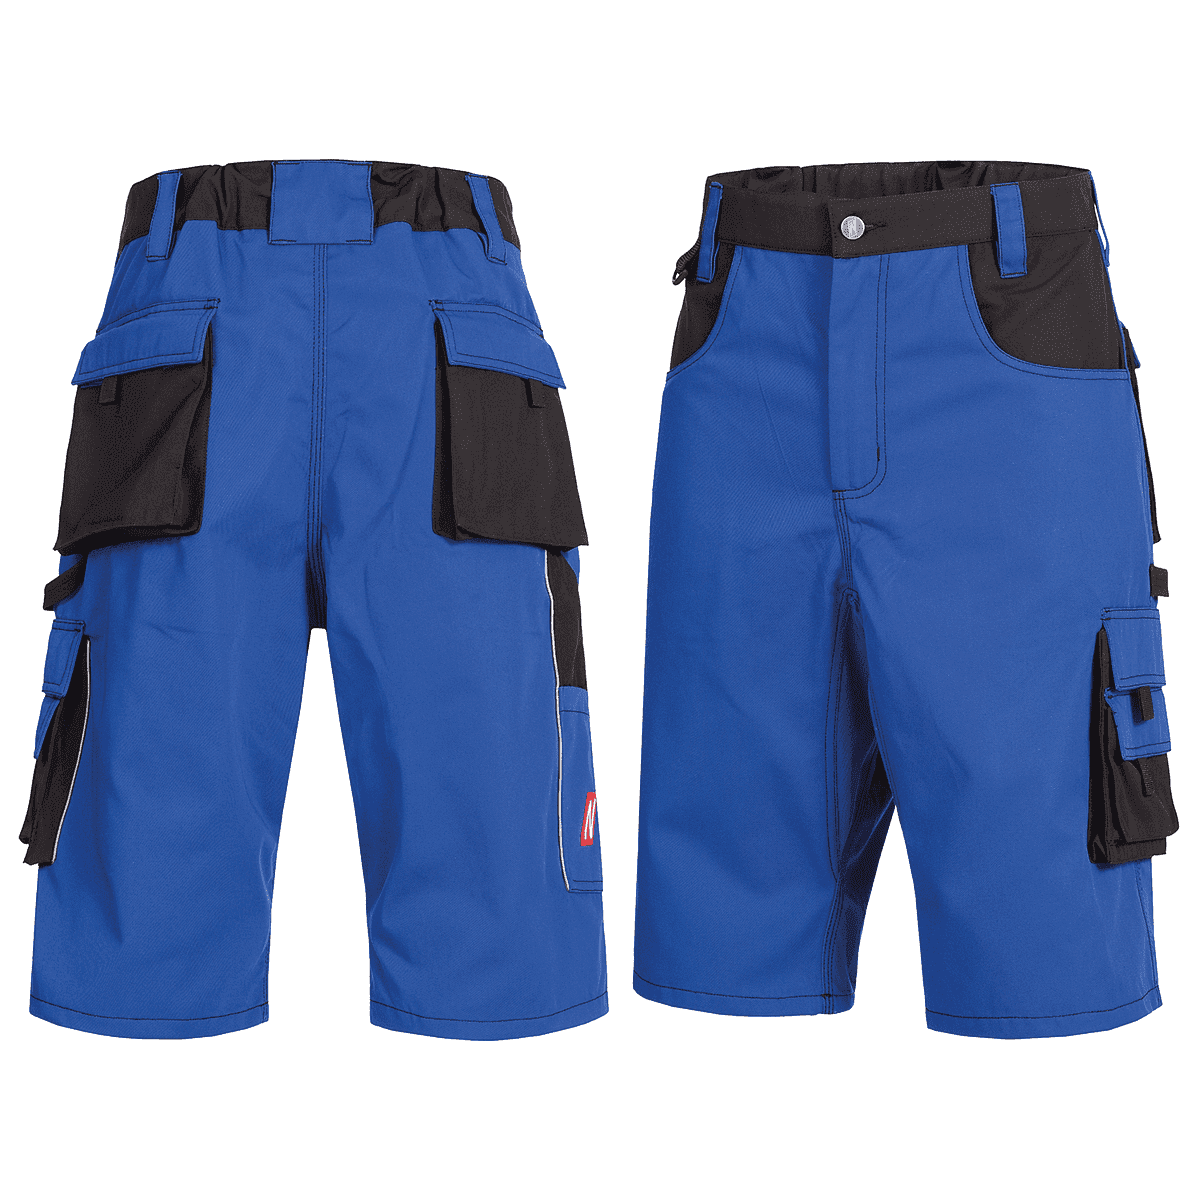 Nitras Motion Tex Plus Shorts Gr. 42, blau/schwarz